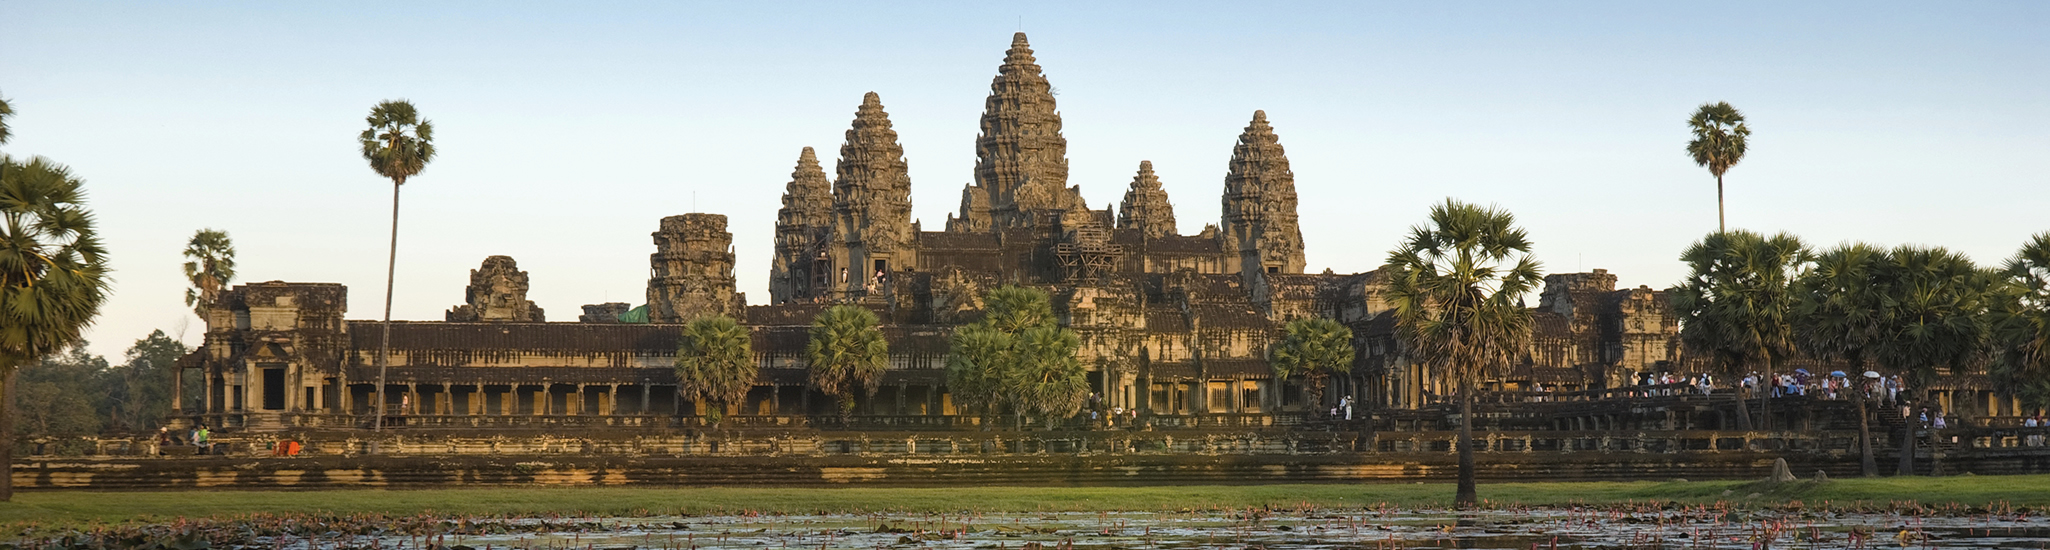 Angkor Wat Cambodia © Cruiseco